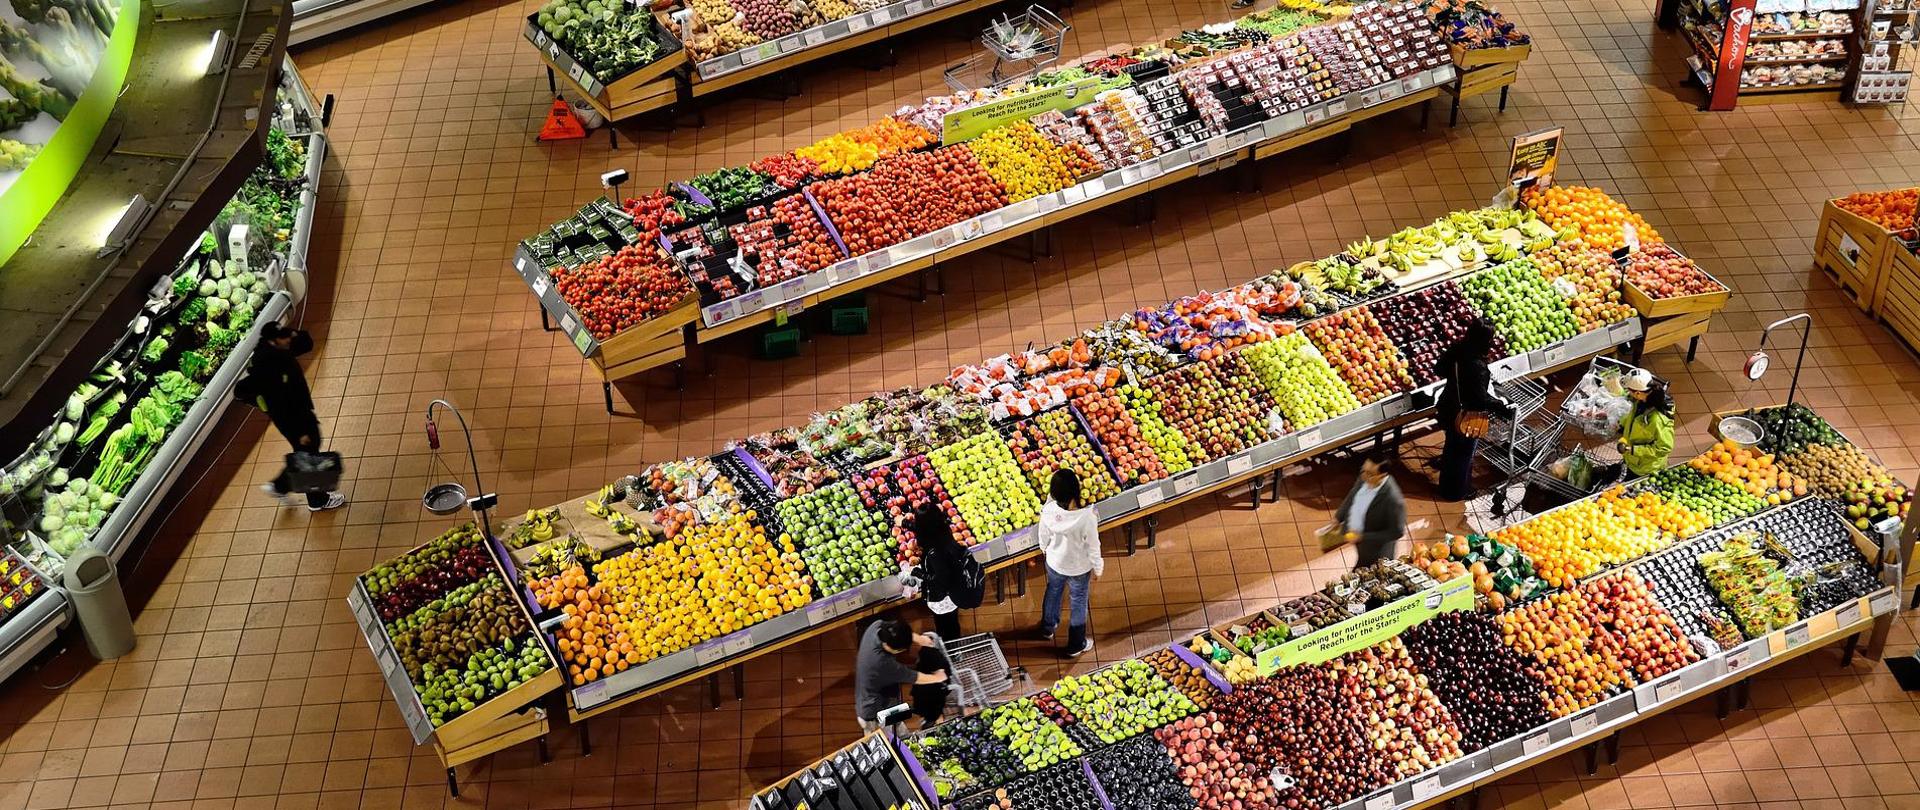 Na zdjęciu znajduje się (widok z góry) dział warzyw i owoców w supermarkecie - stoją rzędy wyłożonych na stojakach świeżych owoców i warzyw.